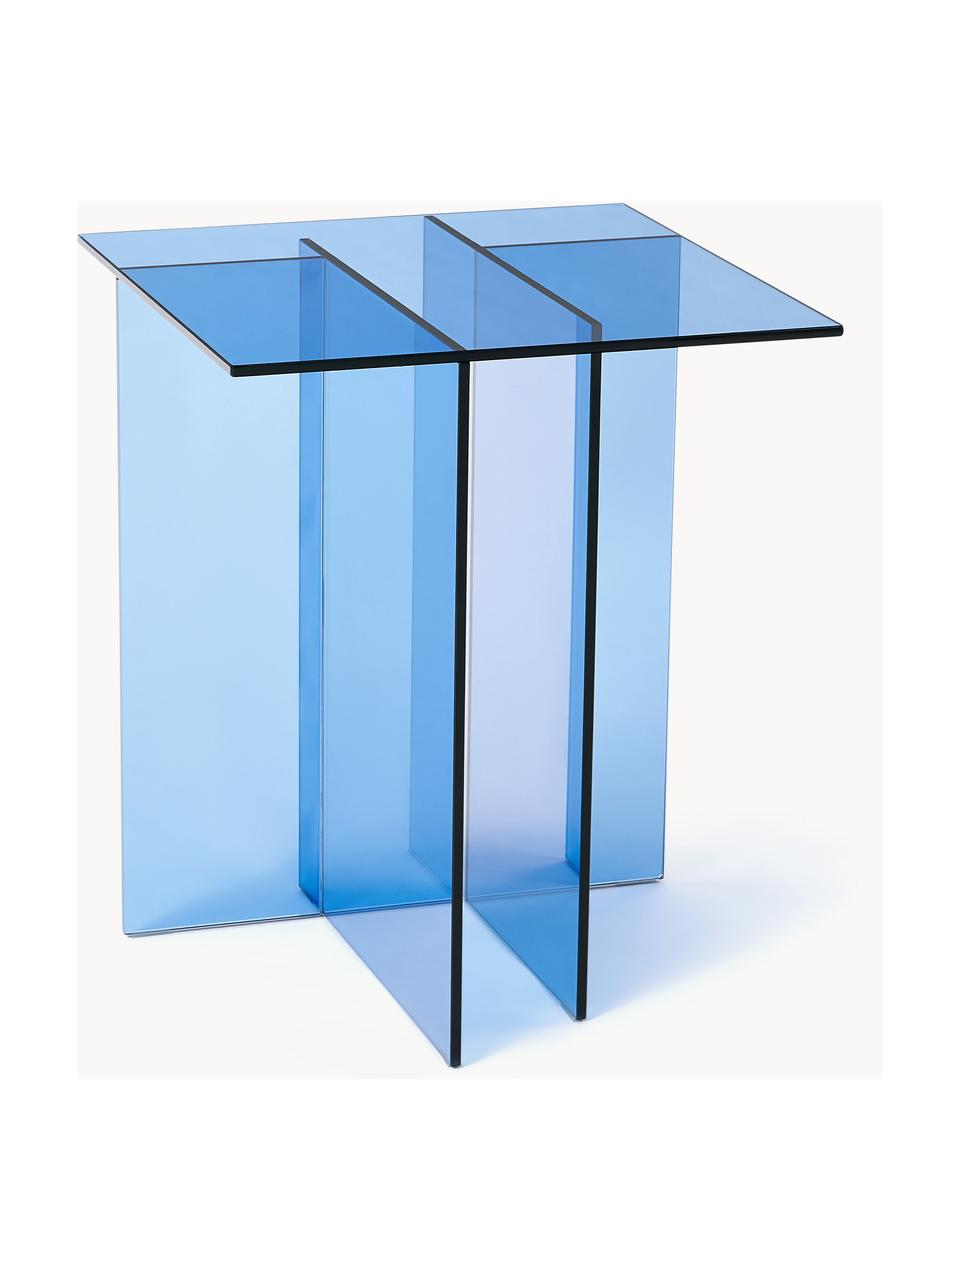 Stolik pomocniczy ze szkła Anouk, Szkło, Niebieski, transparentny, S 42 x W 50 cm